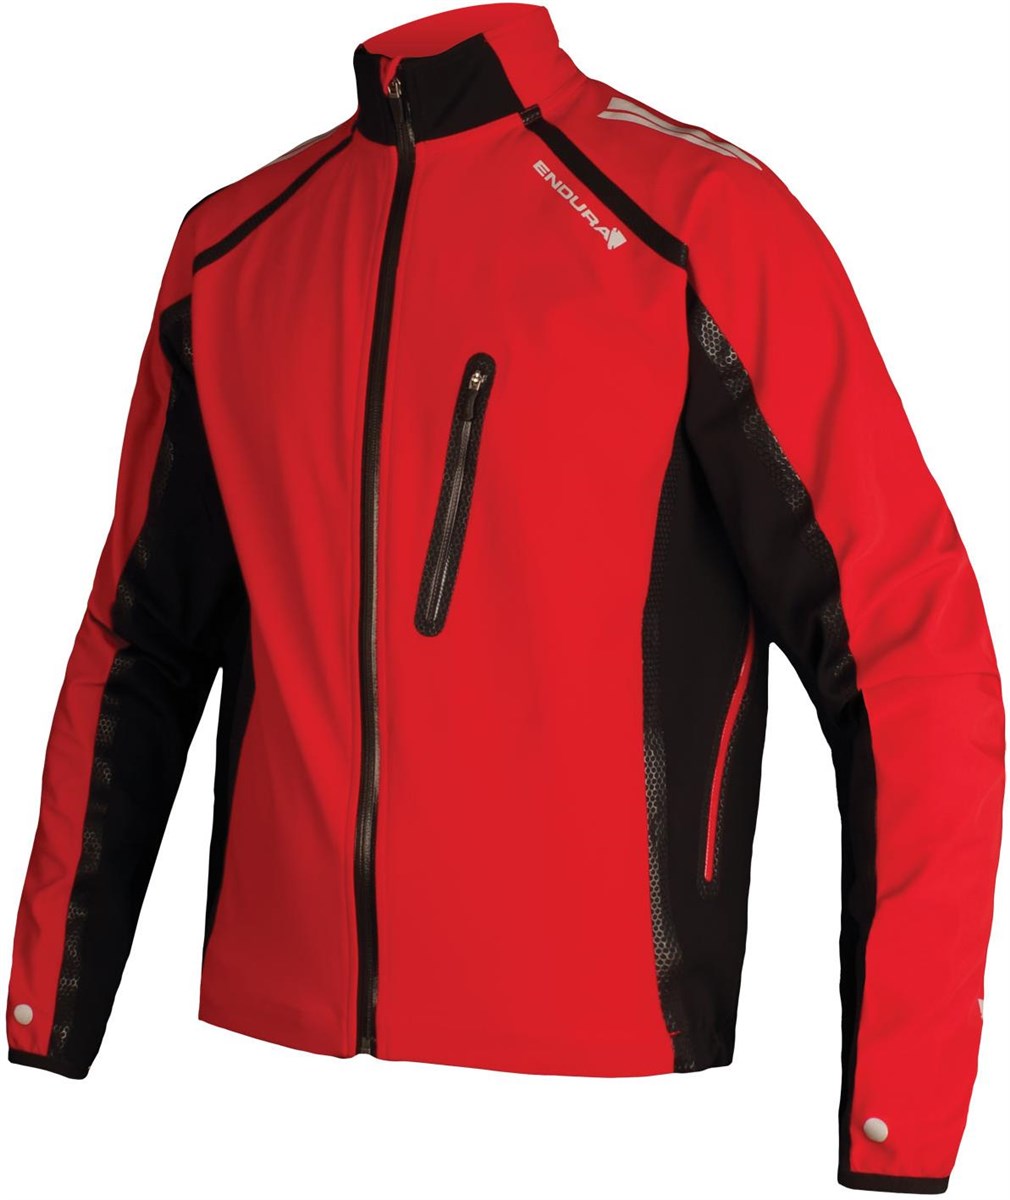 Endura Stealth II Waterproof Cycling Jacket